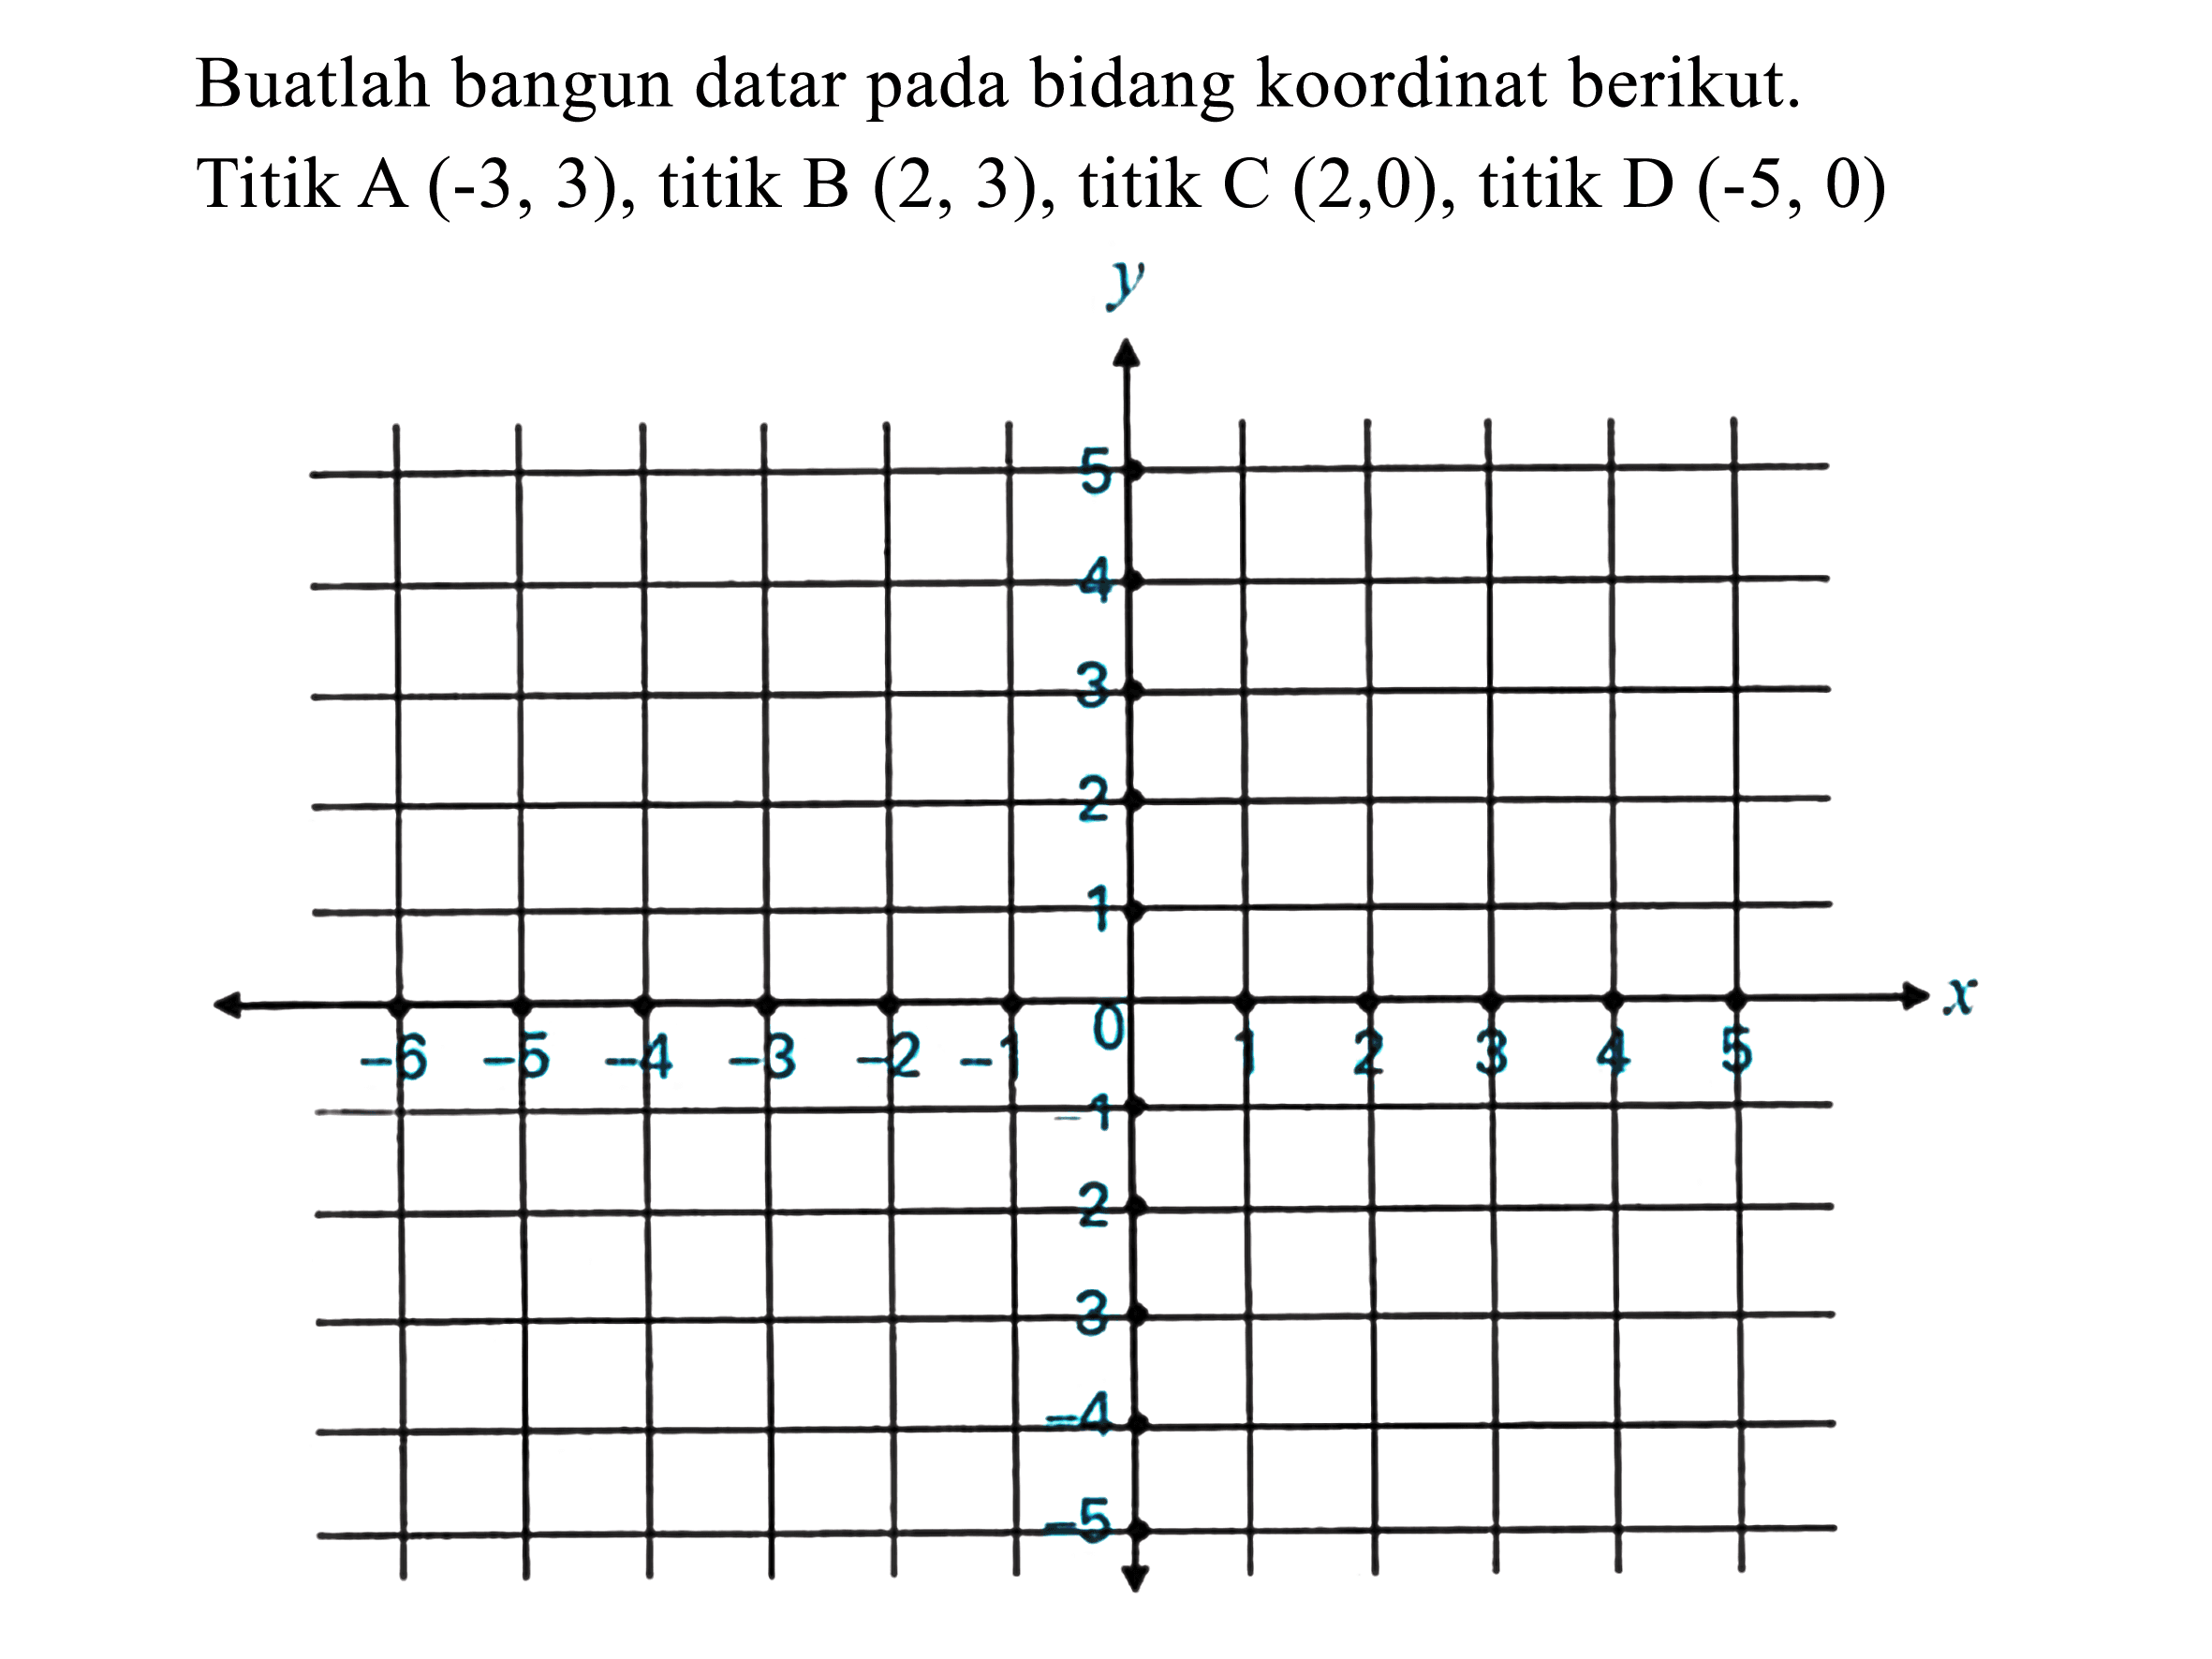 Buatlah bangun datar pada bidang koordinat berikut. Titik A  (-3,3) , titik B  (2,3) , titik C  (2,0) , titik D  (-5,0)